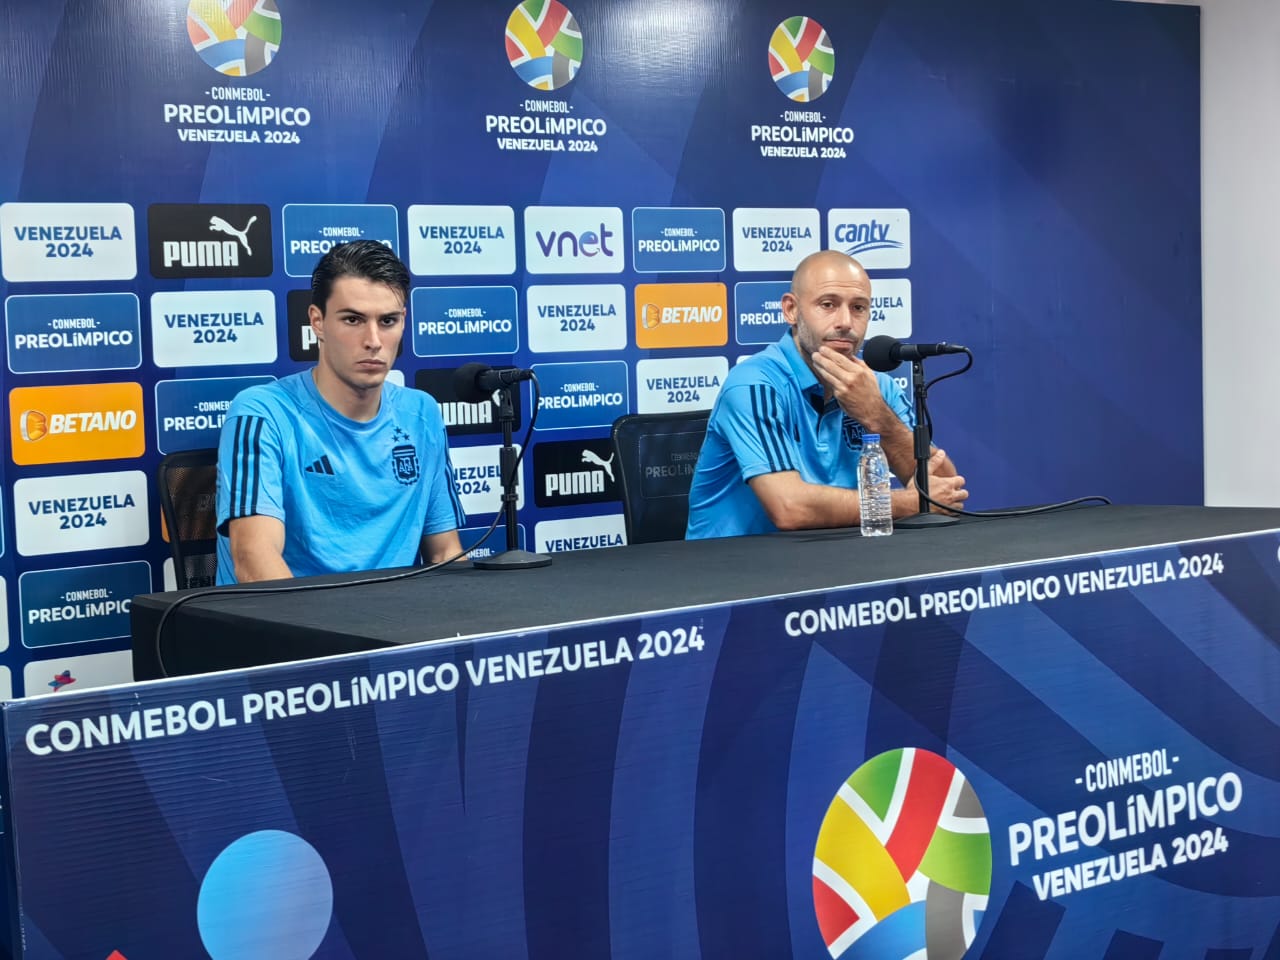 Luego del empate, Javier Mascherano brindó una conferencia donde analizó el partido.